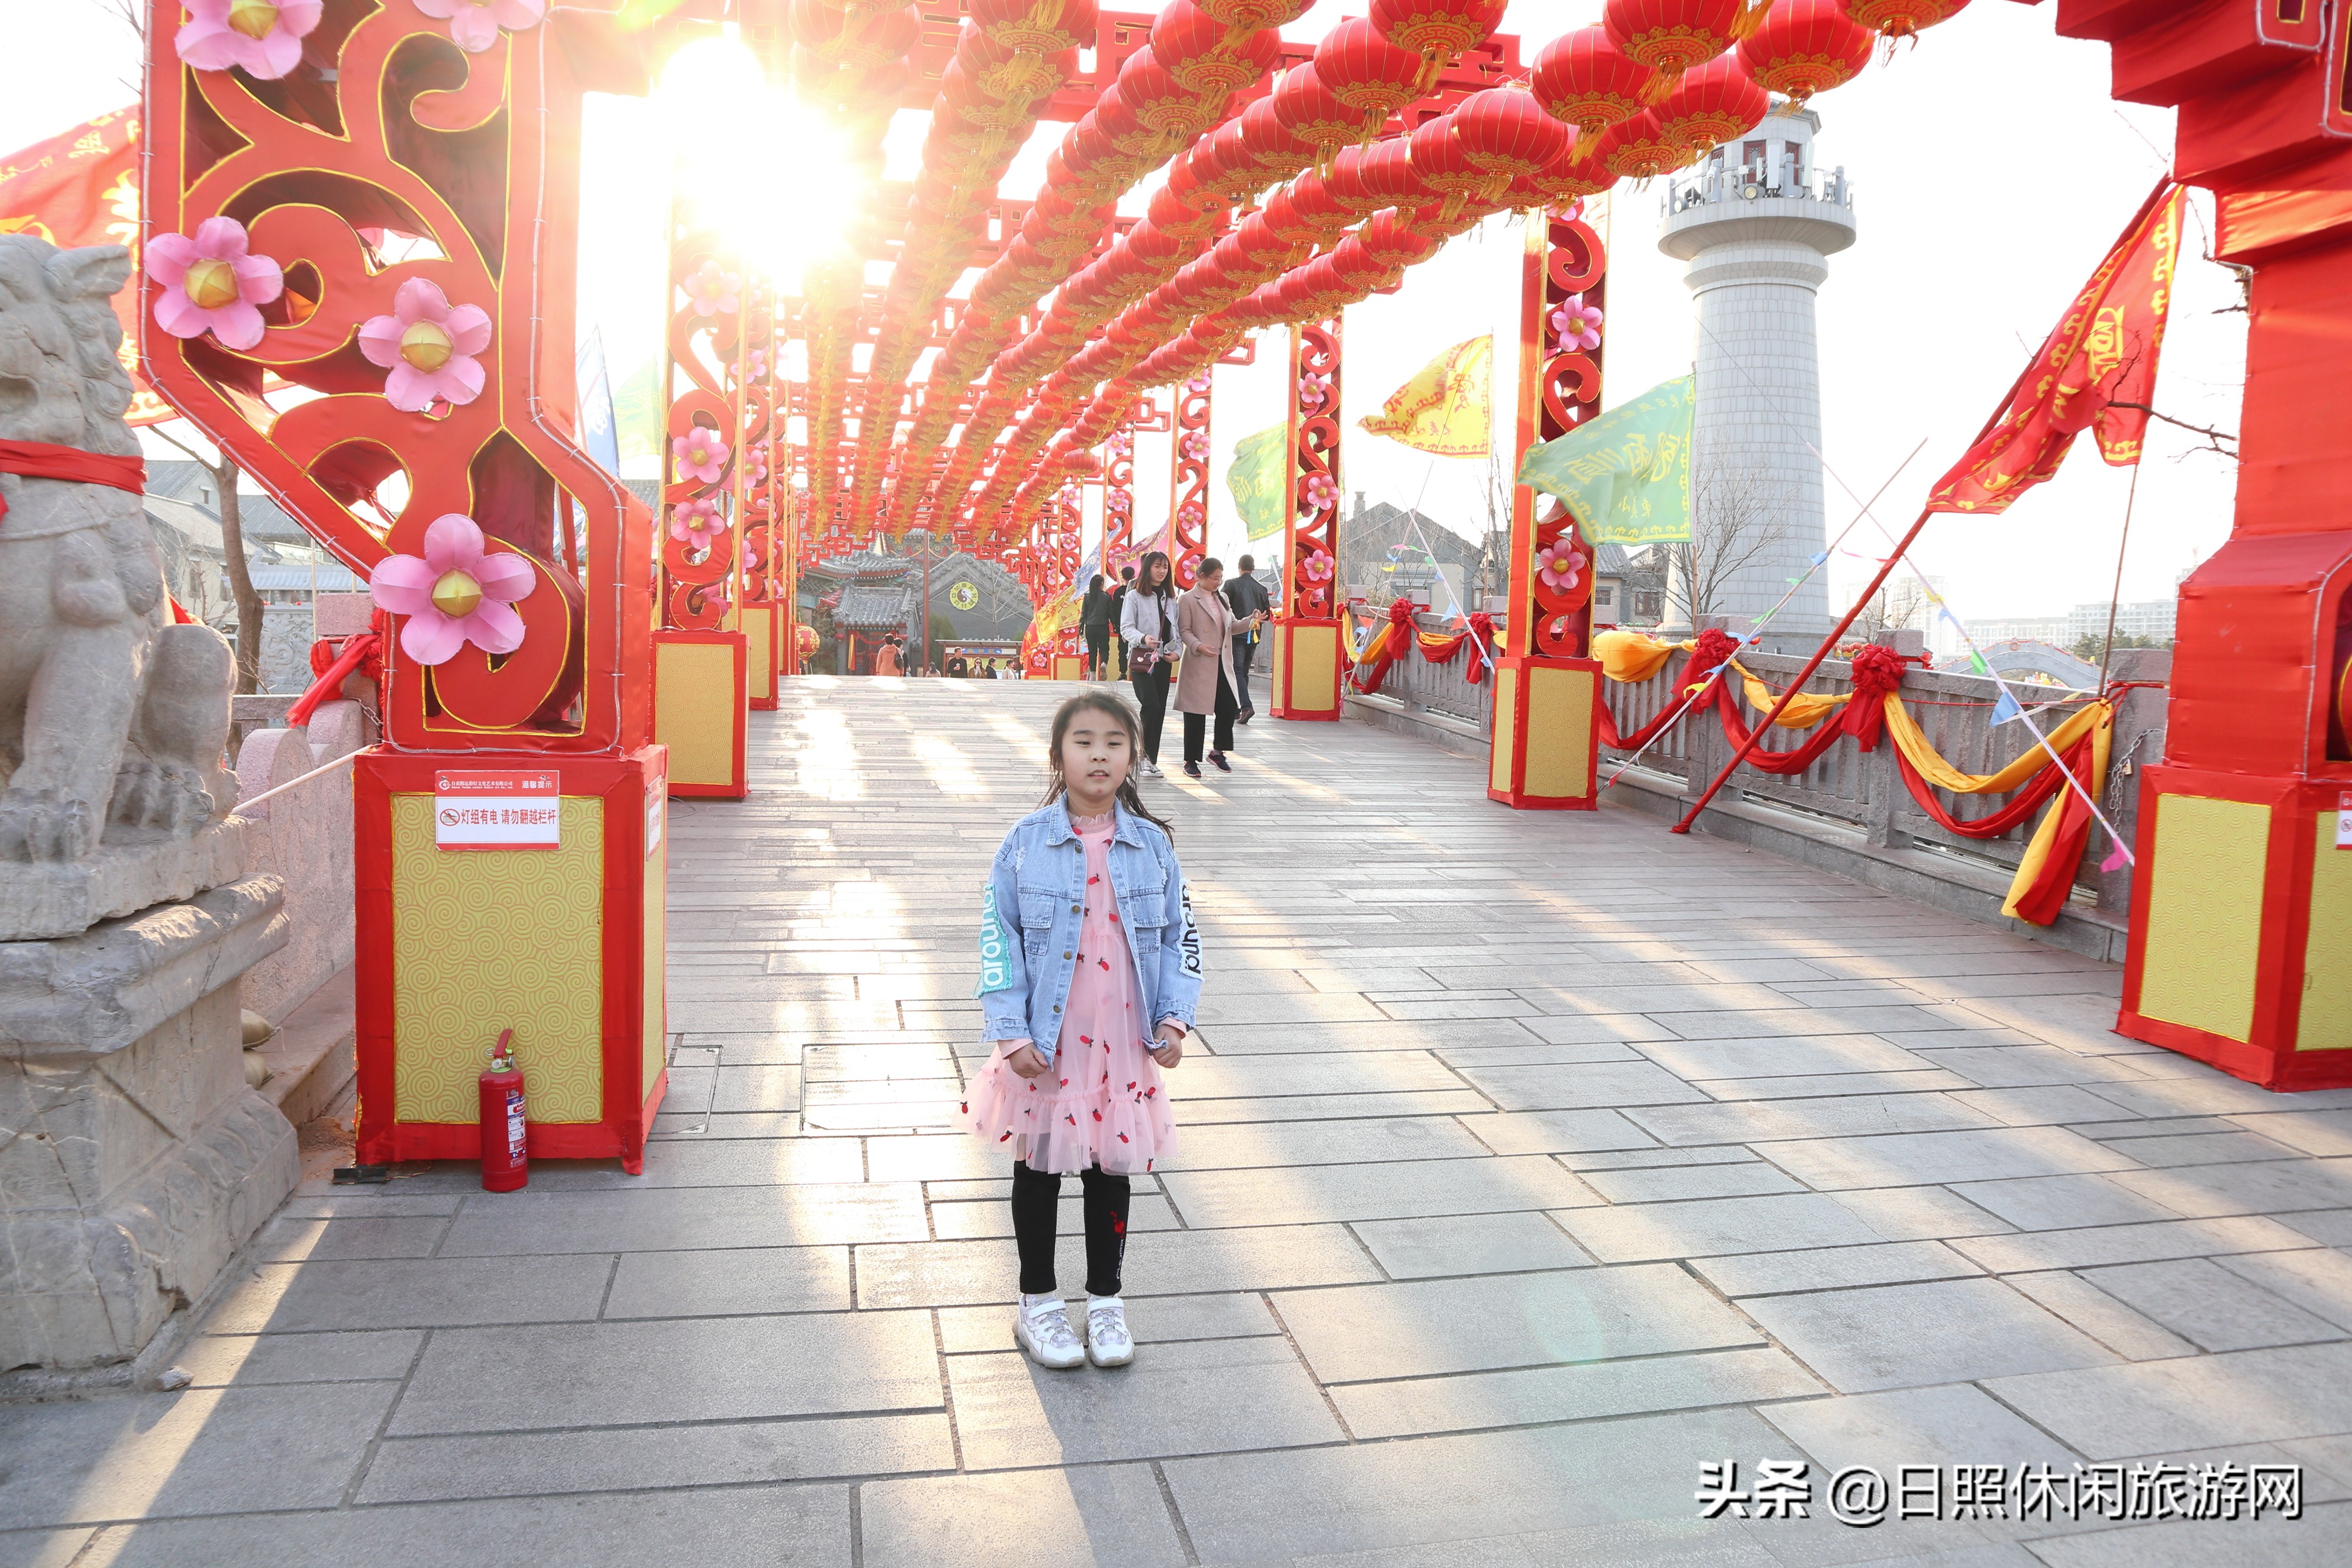 一位江苏游客的旅游自述，带孩子自驾游日照攻略分享！